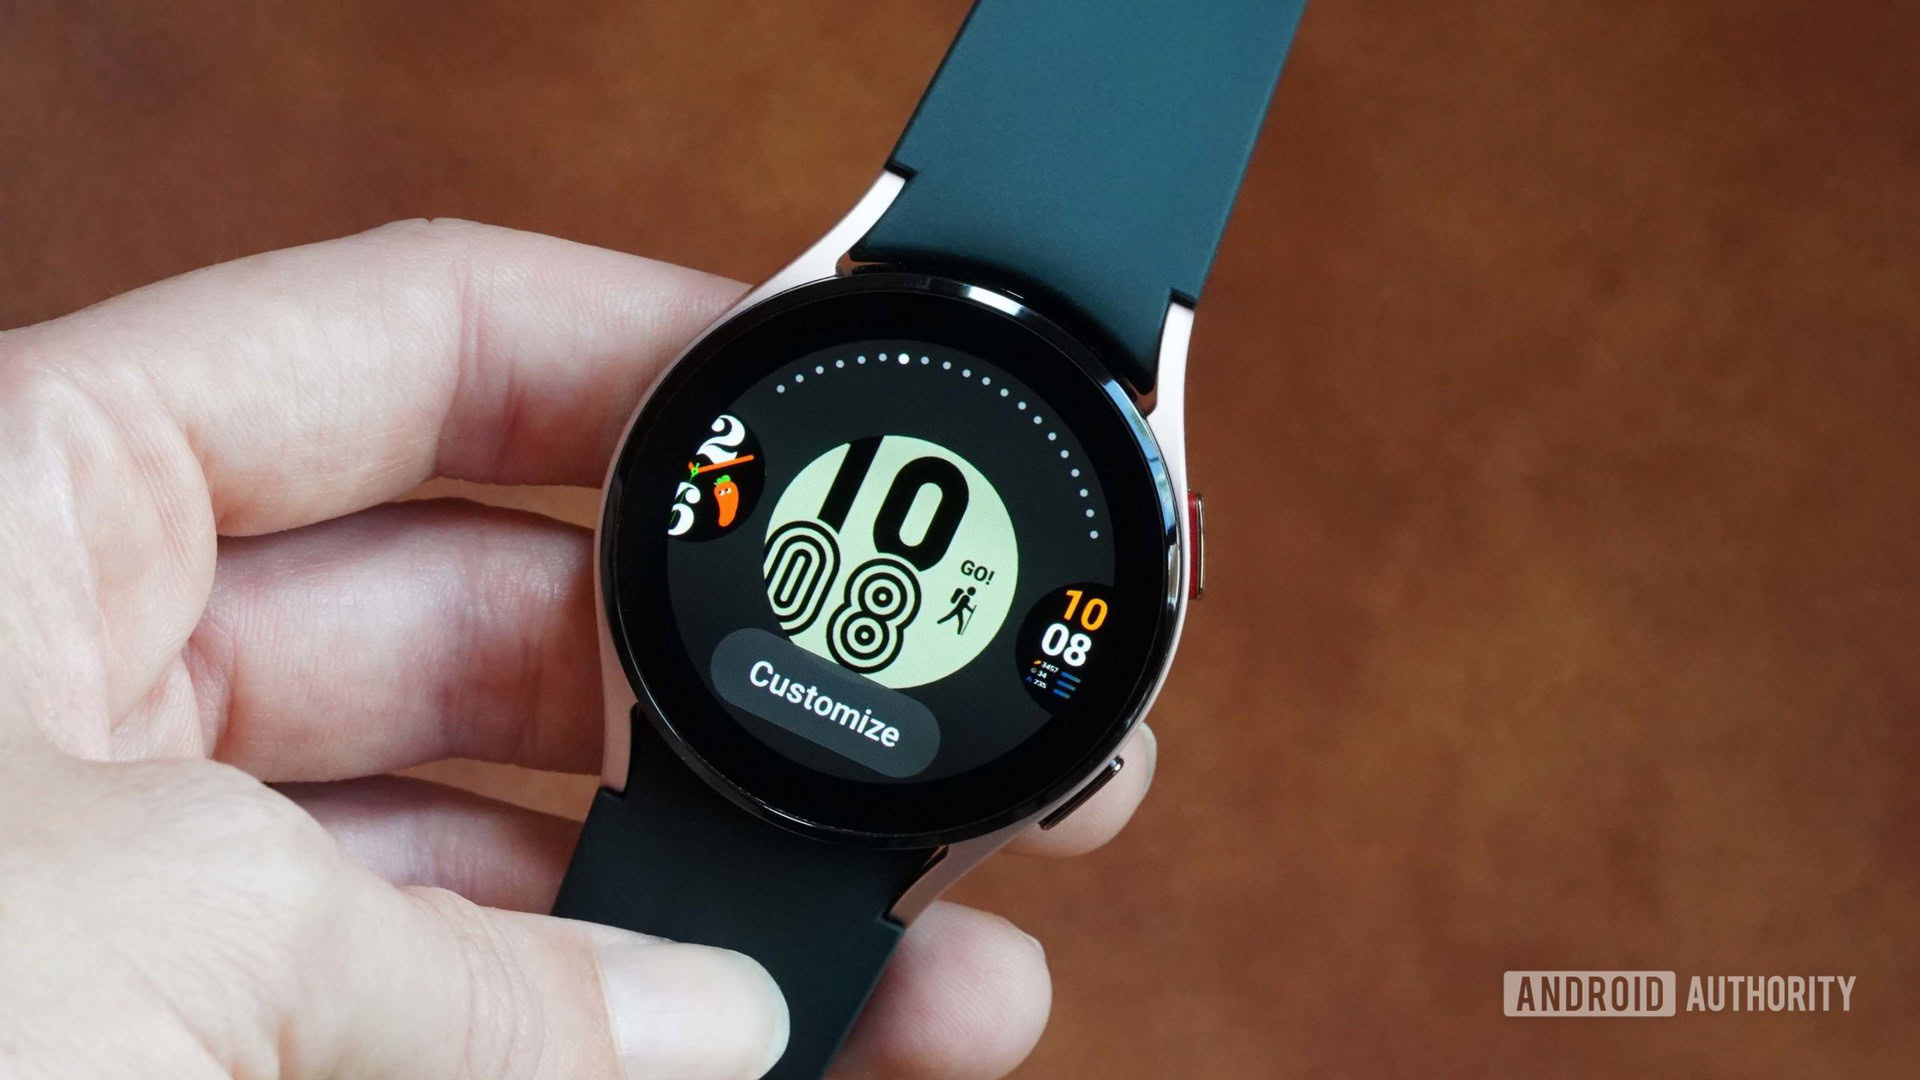 Các mặt đồng hồ của Samsung Galaxy Watch sẽ khiến bạn ngỡ ngàng về sự đa dạng và cá tính của chúng. Nếu bạn muốn có một mặt đồng hồ chất lượng và độc đáo, hãy xem qua hình ảnh về các mặt đồng hồ này và chọn cho mình một cái thật ấn tượng.